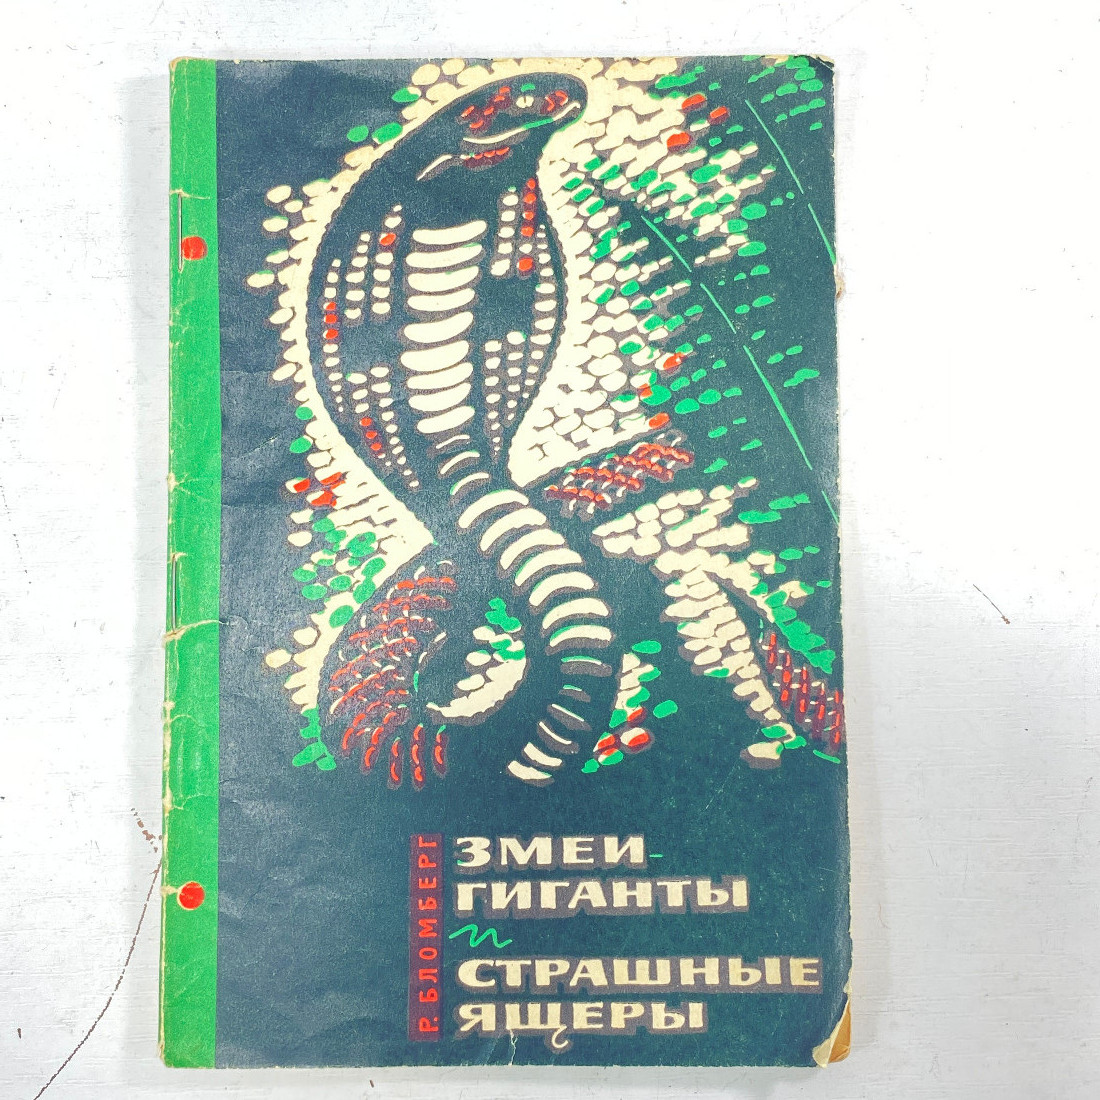 "Змеи-гиганты и страшные ящеры" СССР книга. Картинка 1